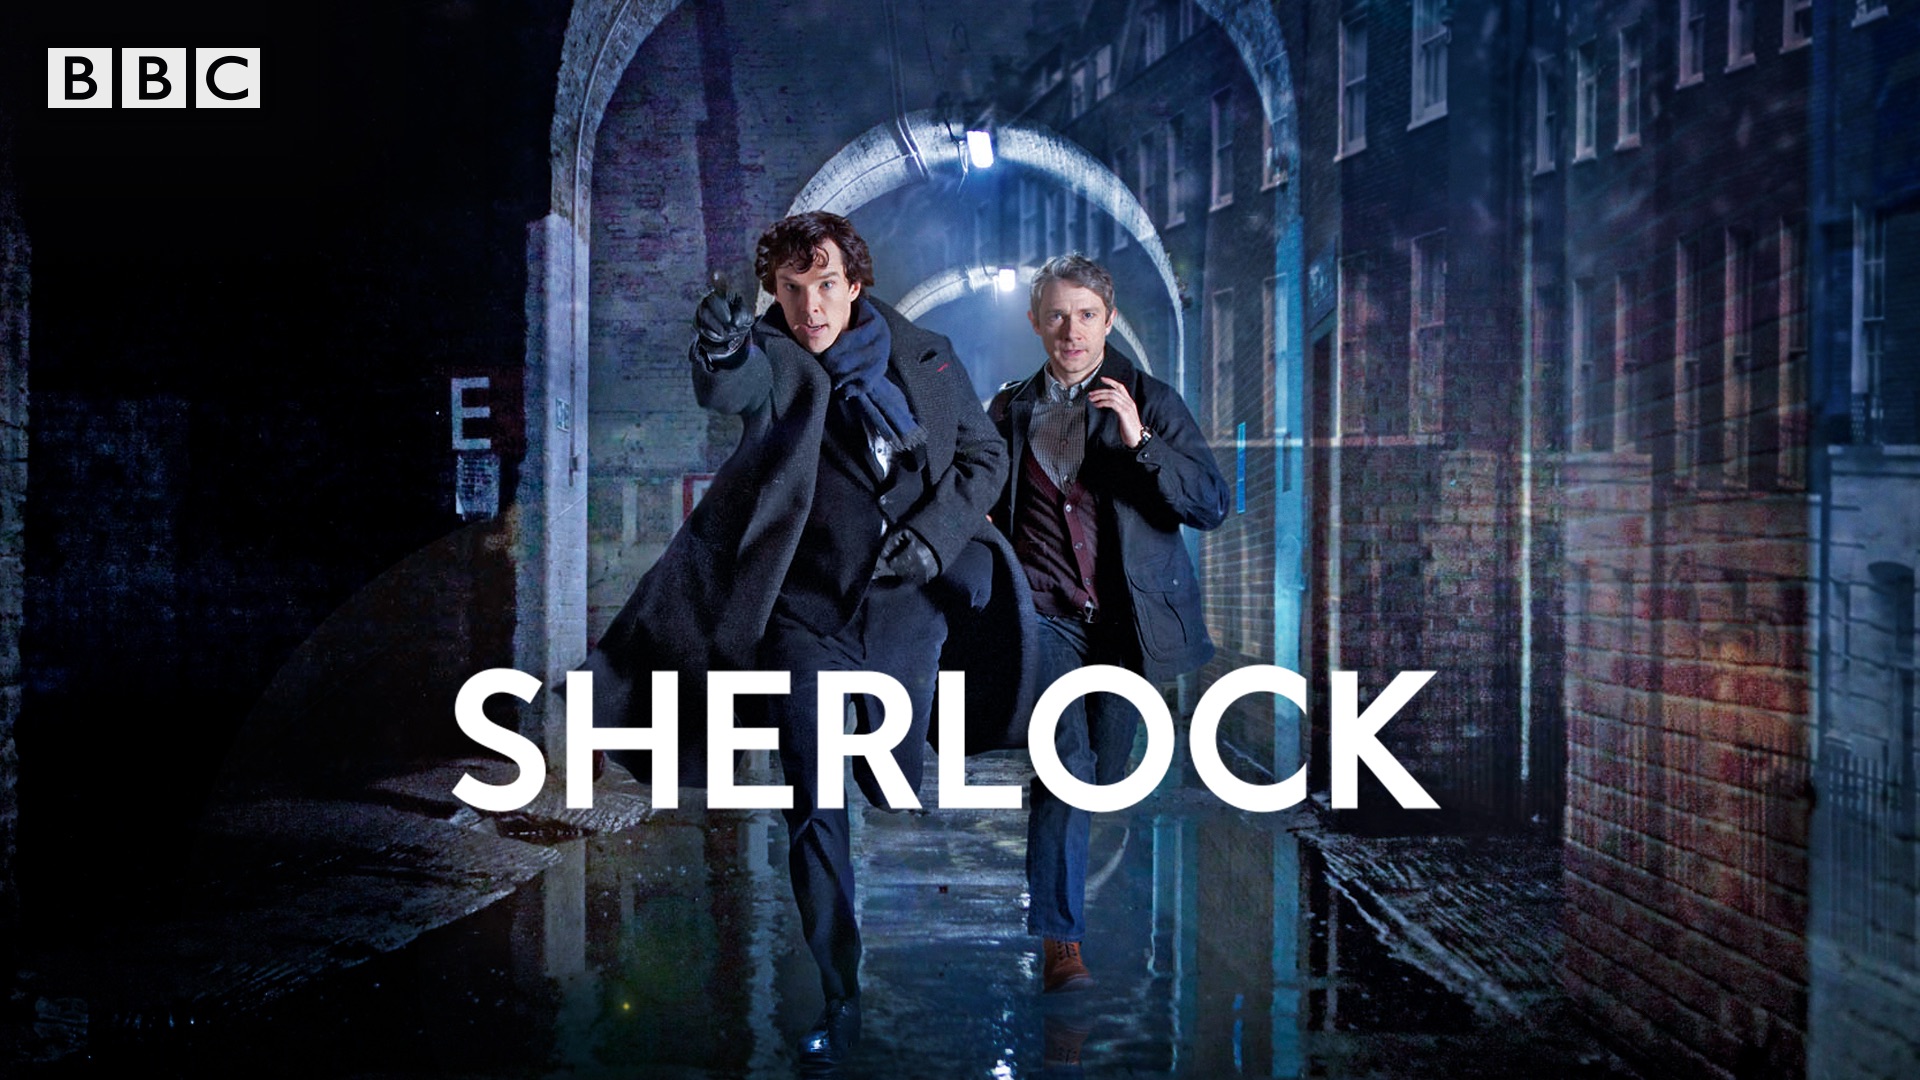 Sherlock holmes HD wallpapers | Pxfuel